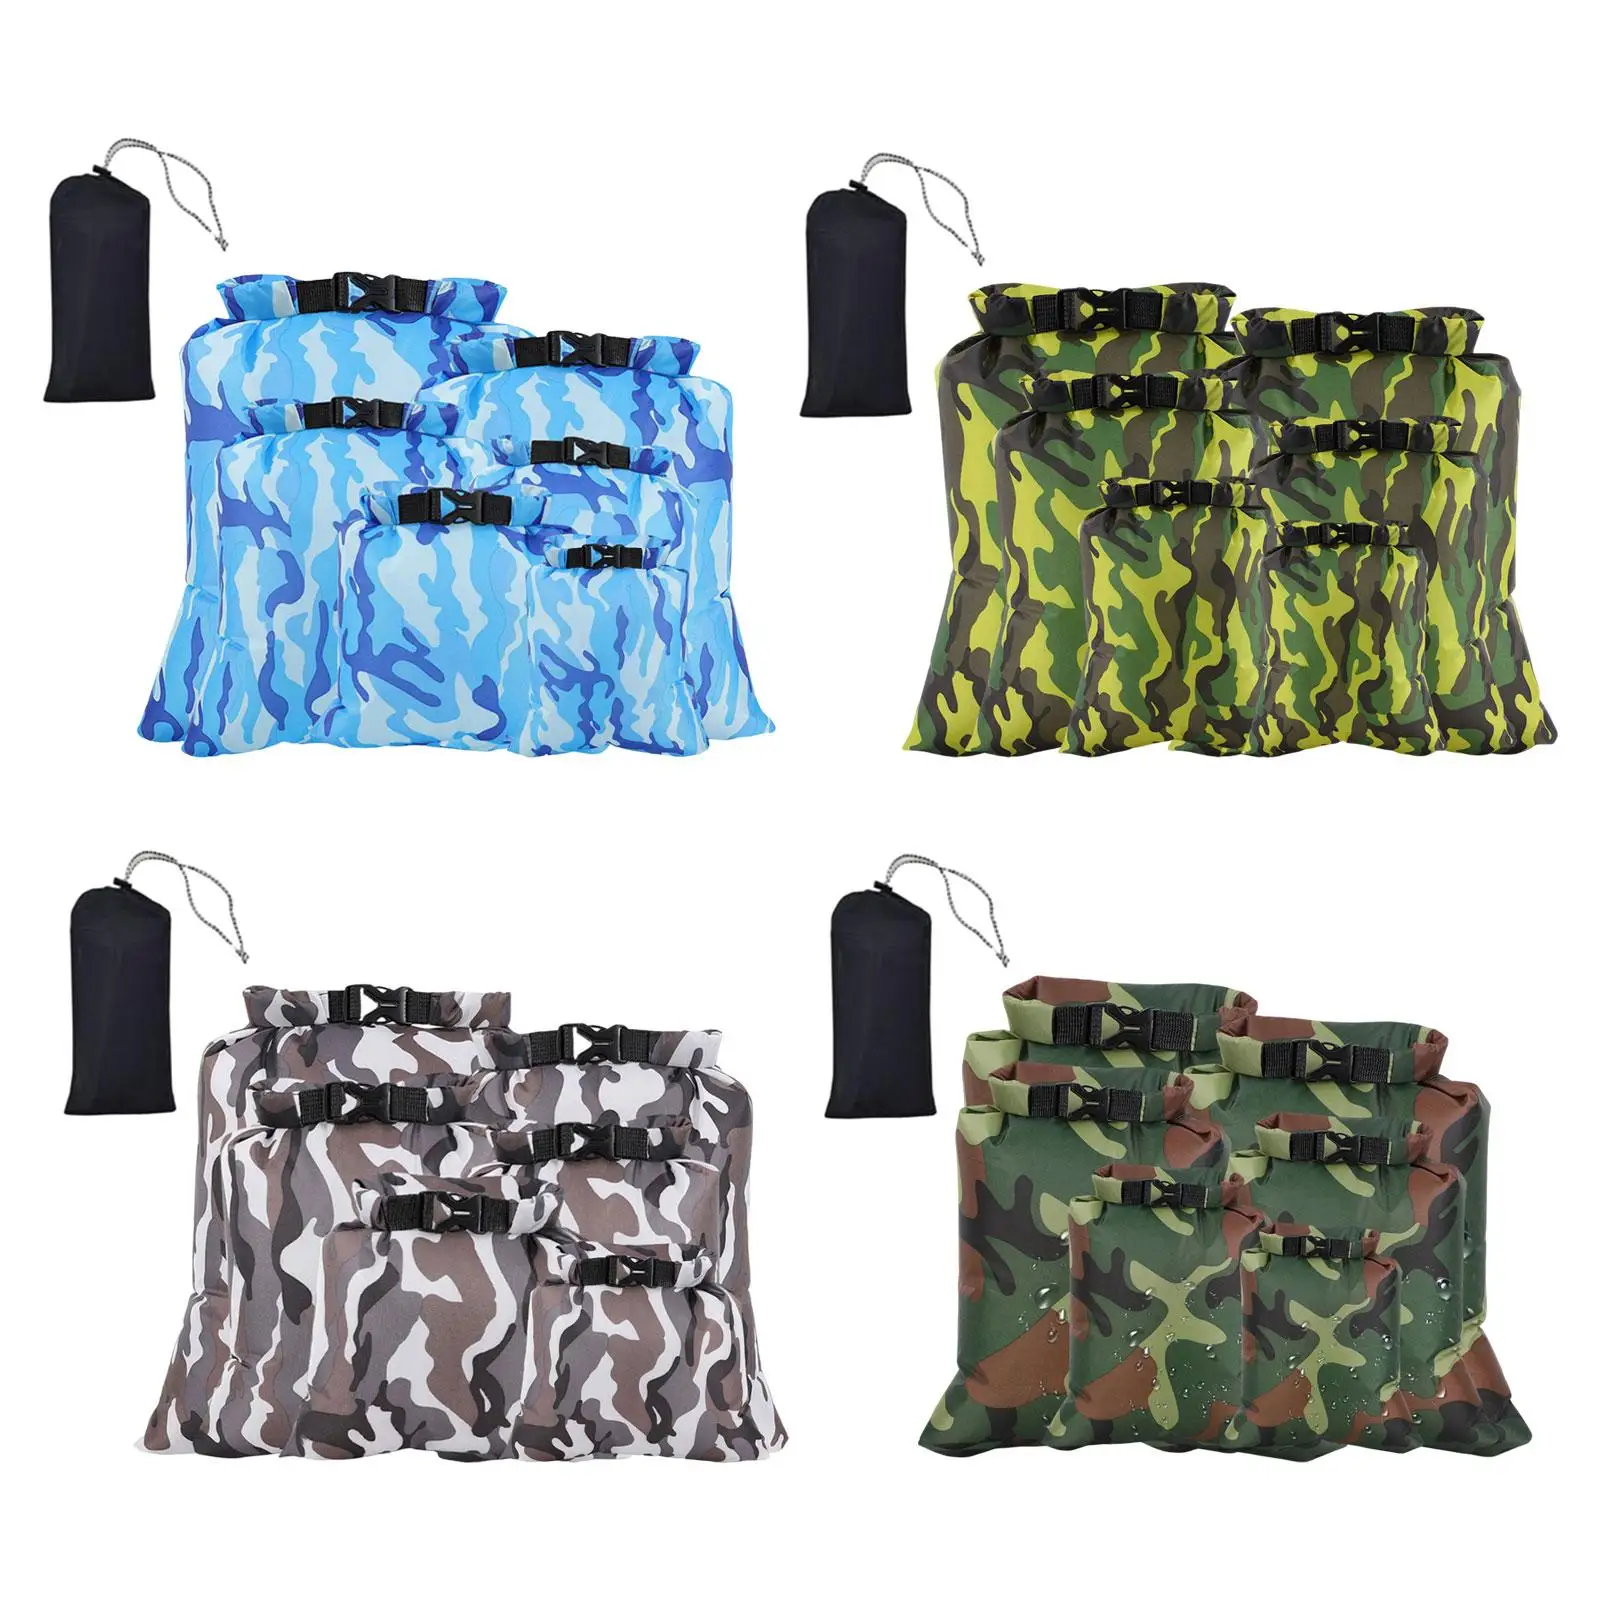 6x Waterproof Dry Bag Keeps Gear Dry Roll Top Waterproof Lightweight Storage Pack Dry Sack for Rafting Sailing Kayaking Gym